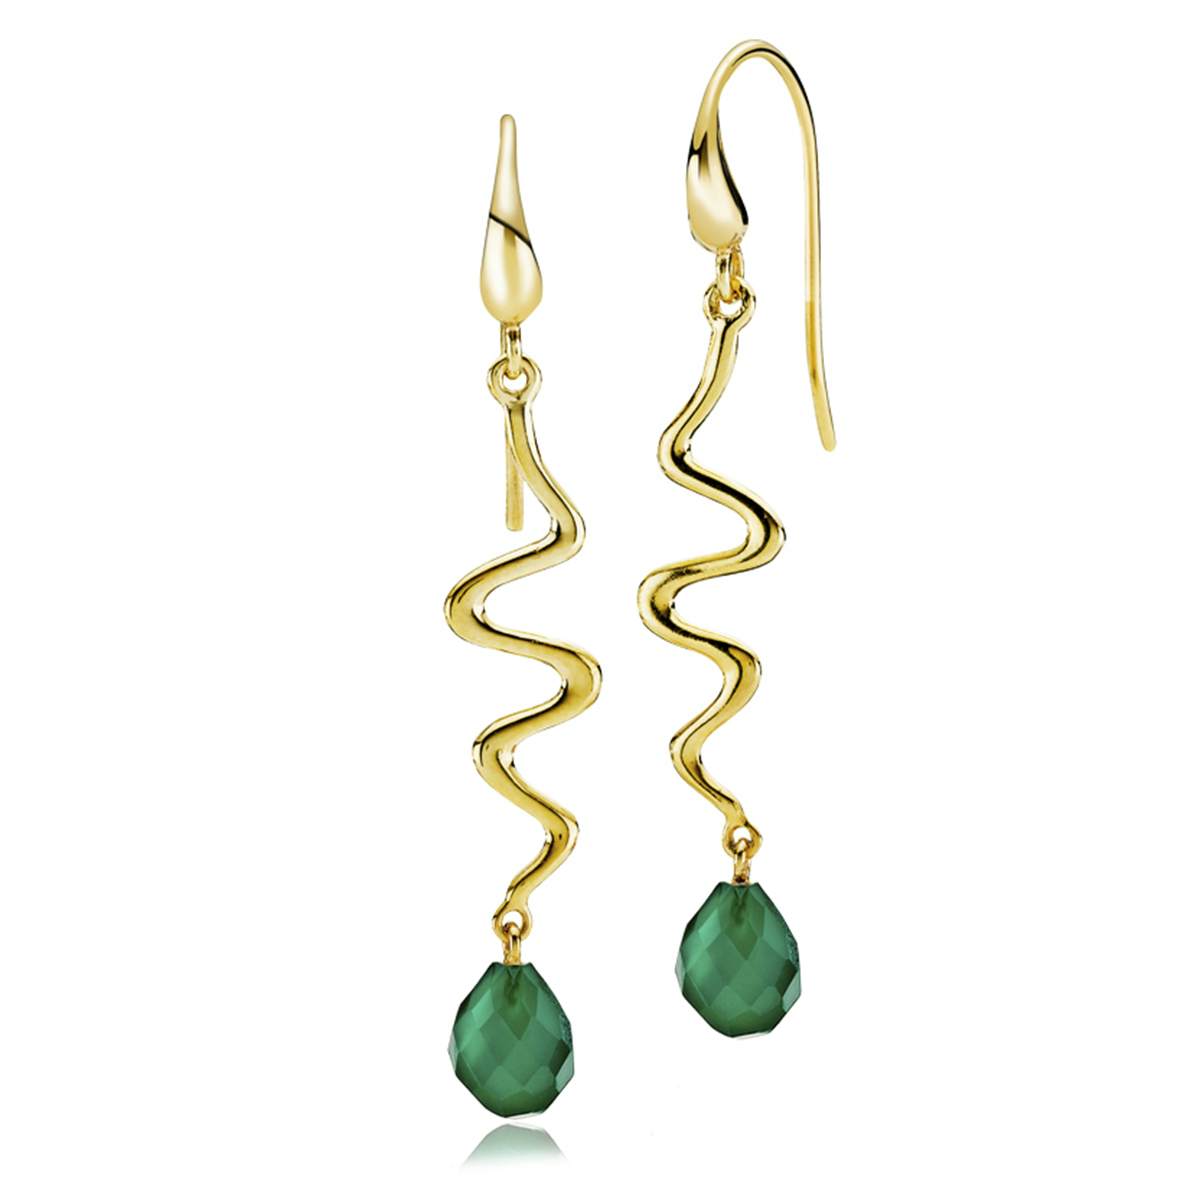 Saniya Earrings Green Onyx fra Izabel Camille i Forgylt-Sølv Sterling 925